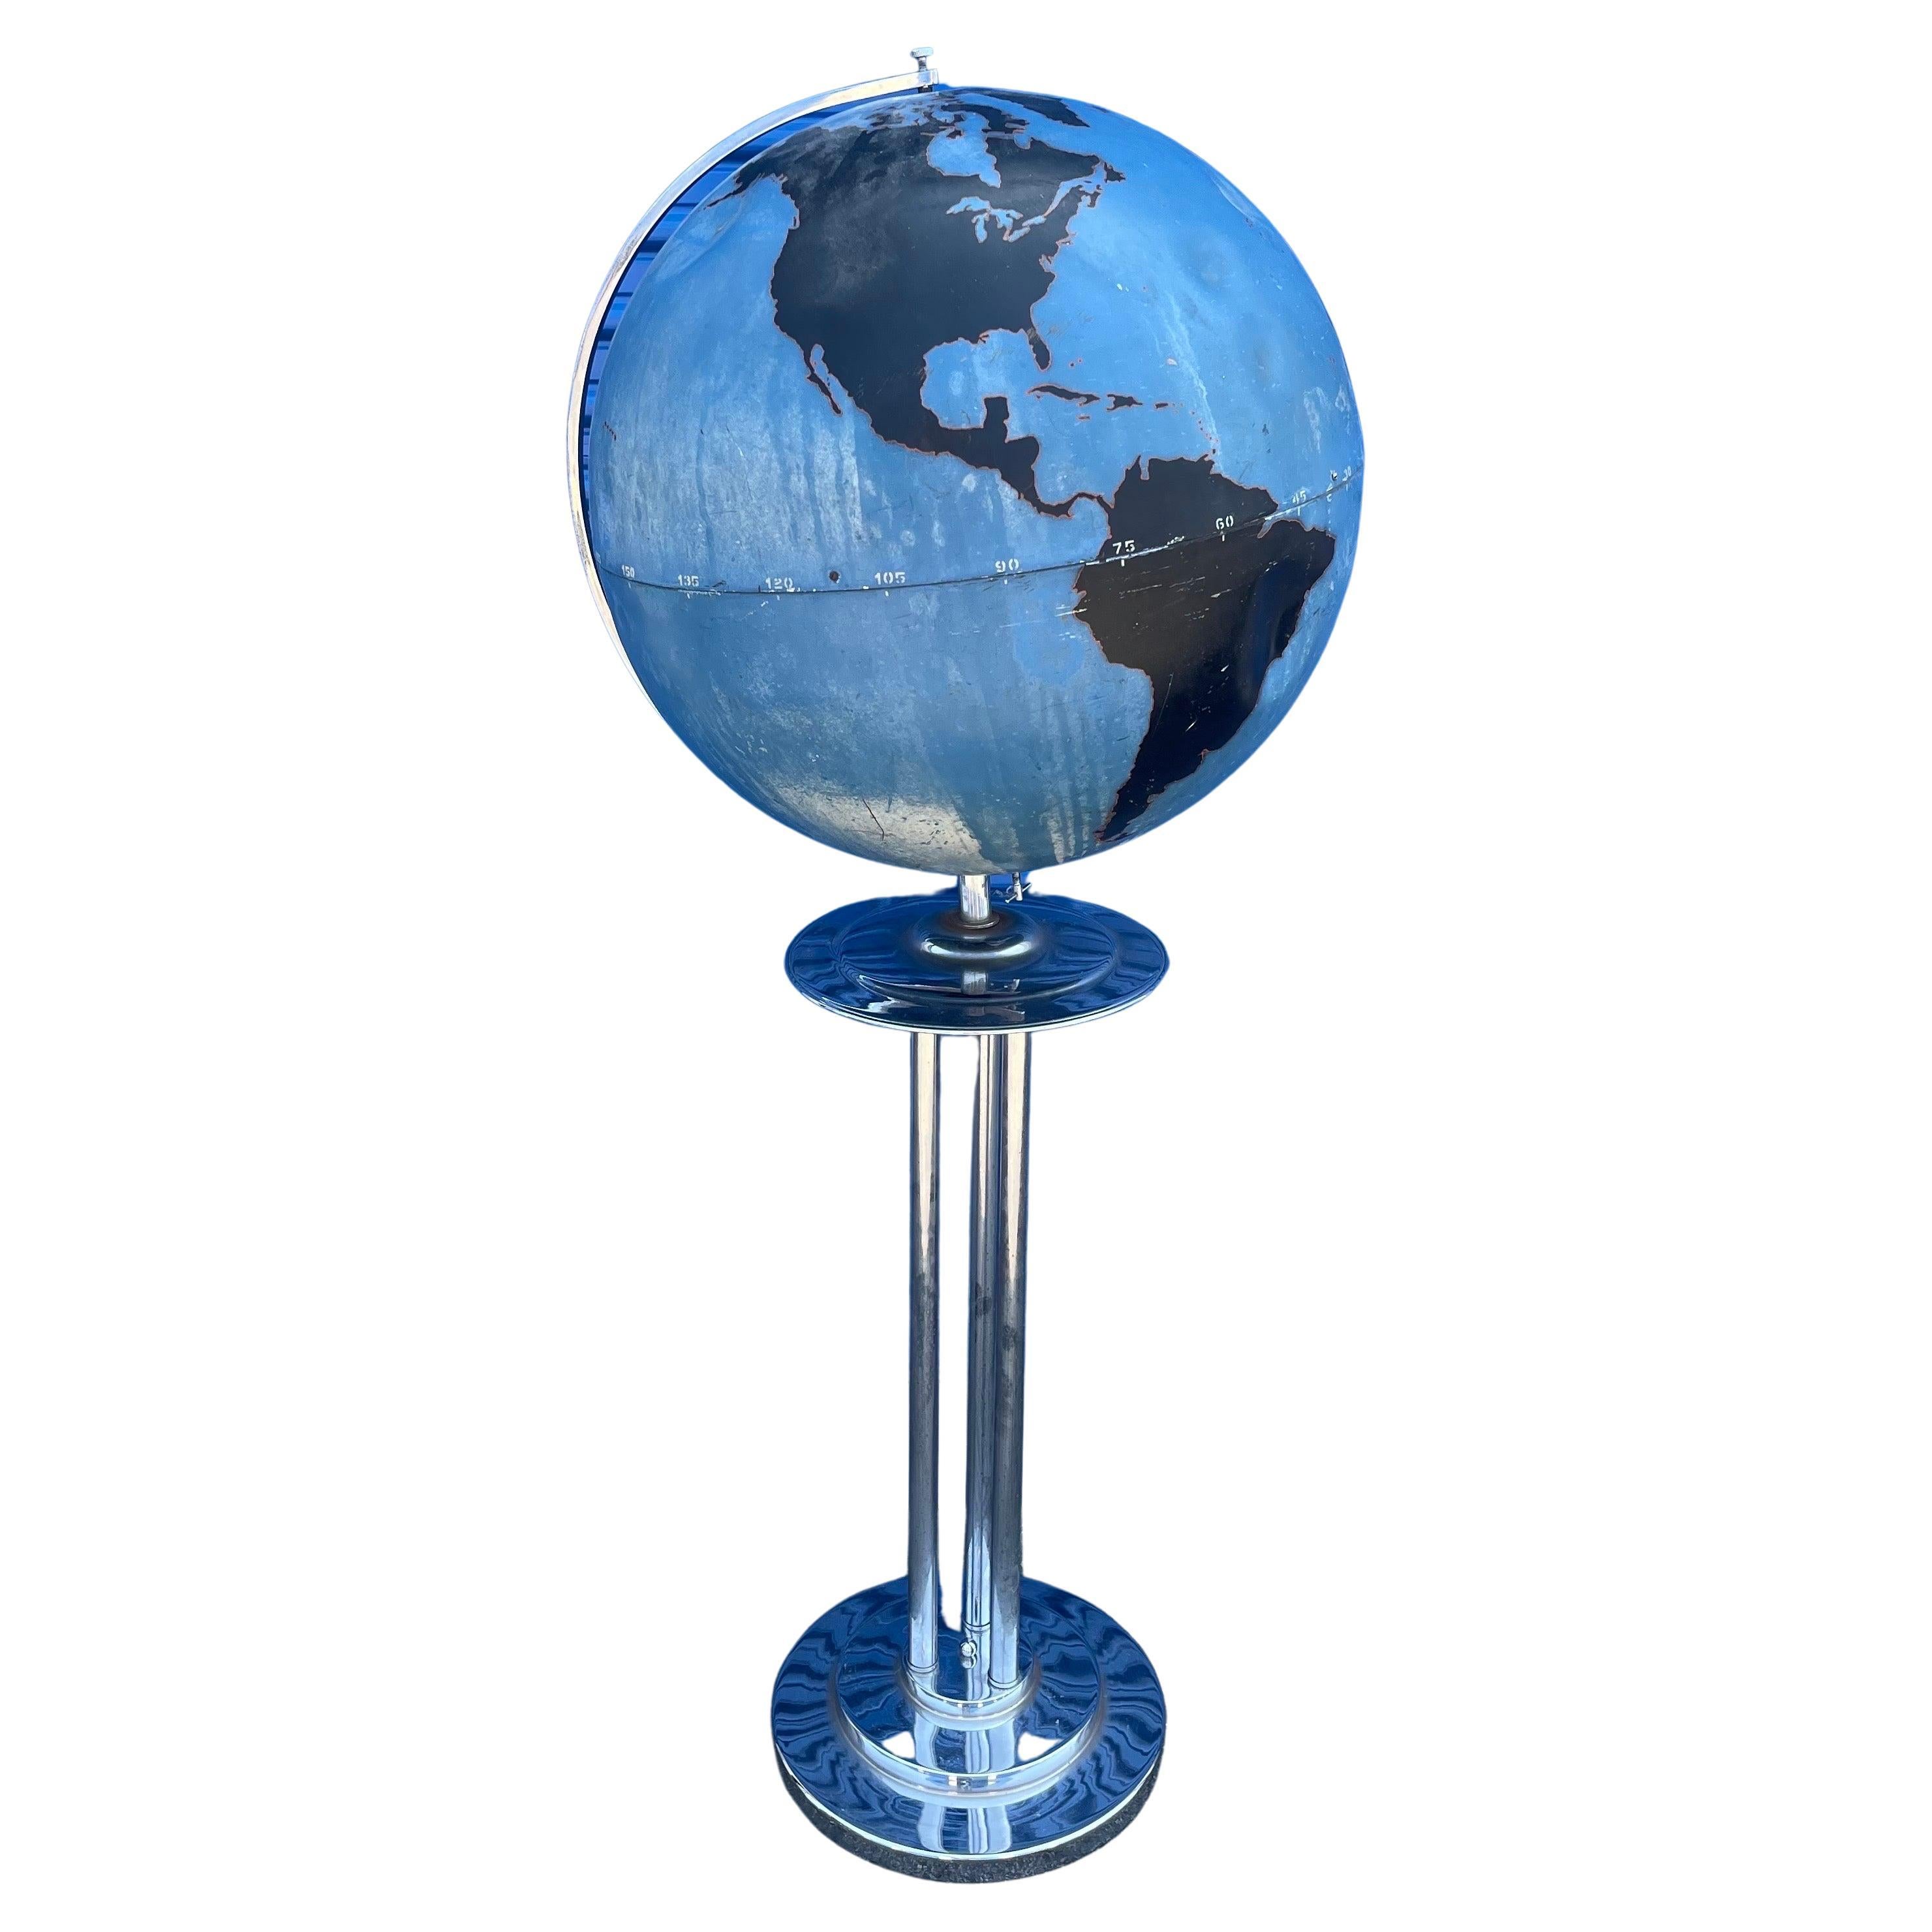 Seltener Art-Deco-Globus von Denoyer-Geppert aus dem Zweiten Weltkrieg mit Chromständer, um 1940. Der Globus ist in gutem Zustand mit Originallackierung; die Kugel hat einige Beulen und Dellen.  Der Globus ist an einem schönen Chromständer befestigt